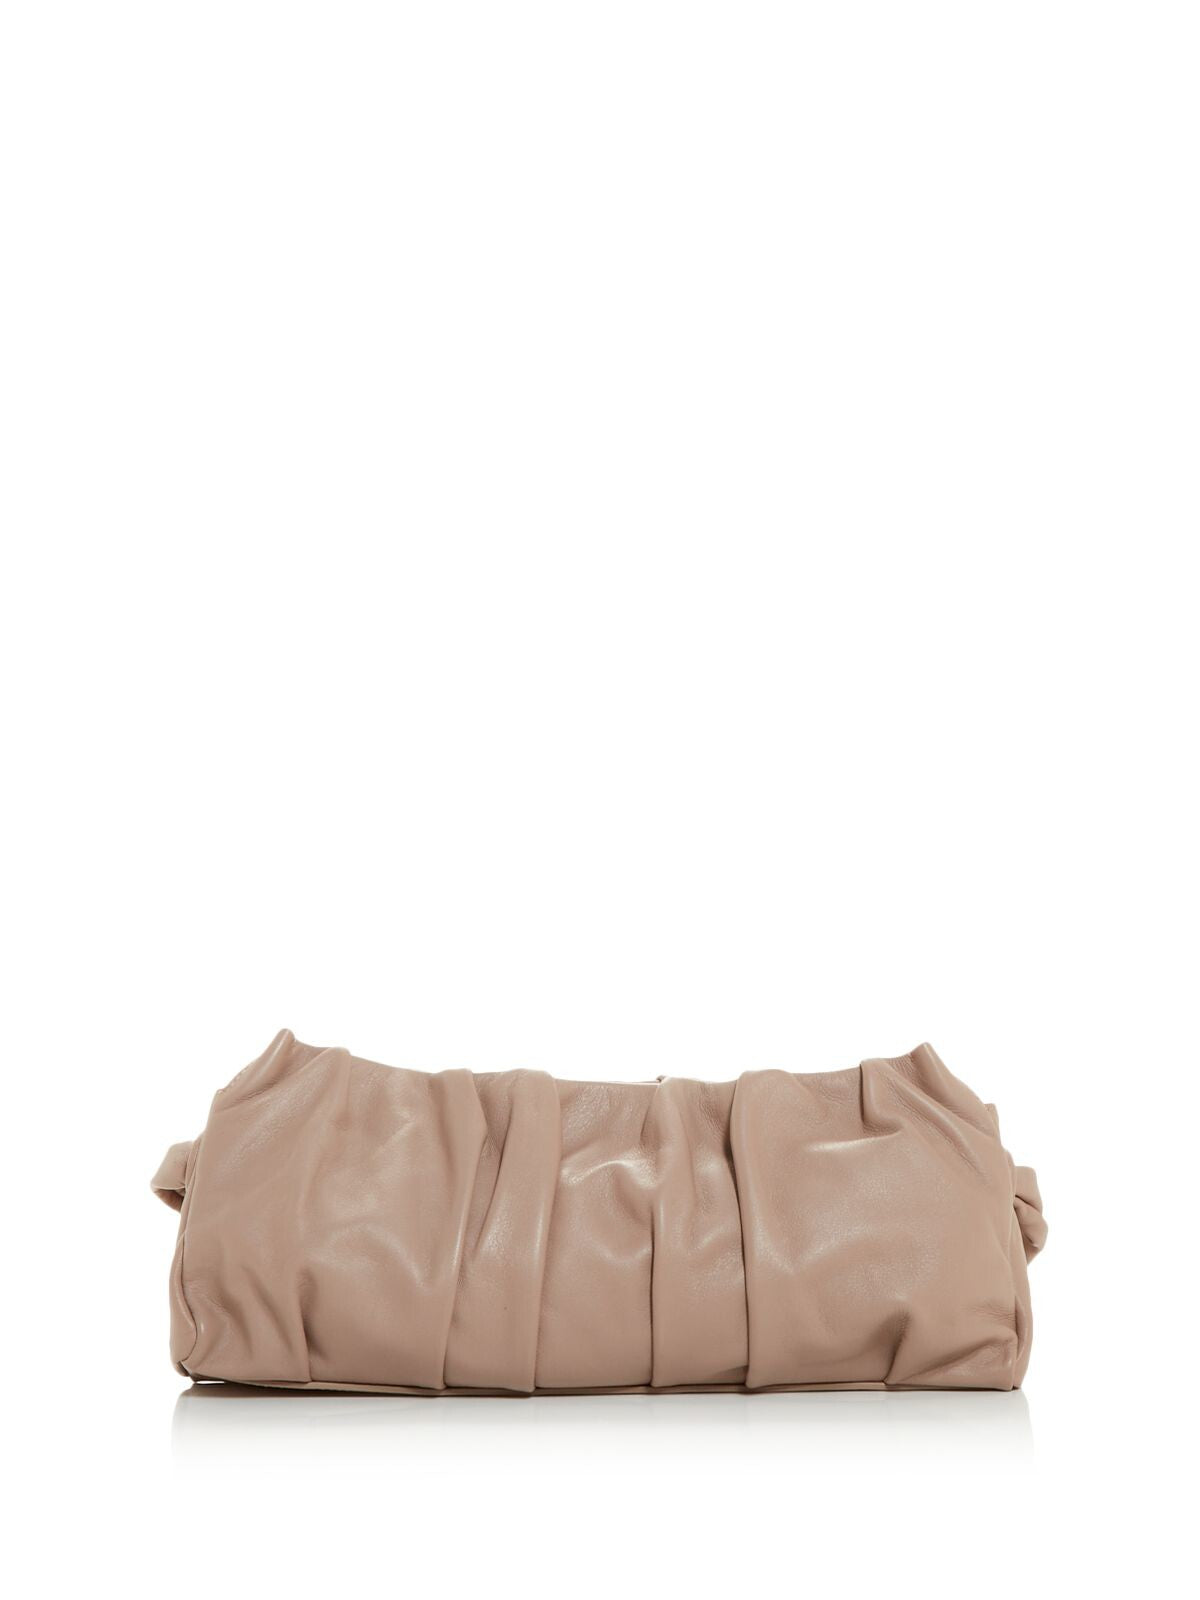 ELLEME Women's Beige Ruched Solid Single Strap Shoulder Bag